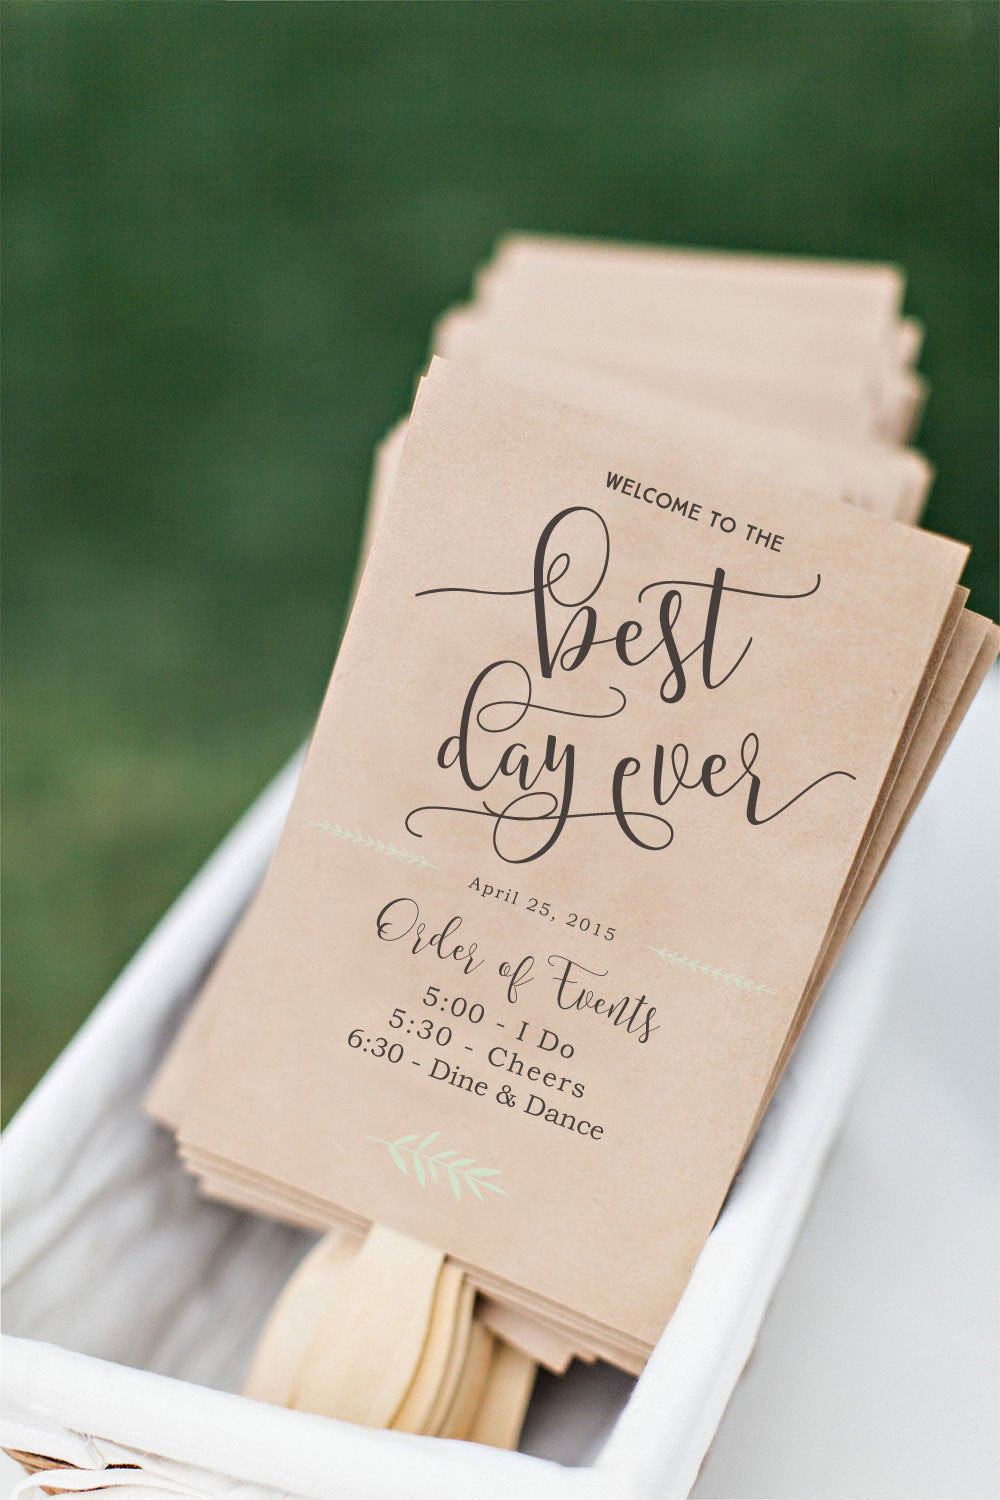 Best ideas about DIY Wedding Programs Fan
. Save or Pin Printable Wedding Program Fan DIY Wedding Program Fun Now.